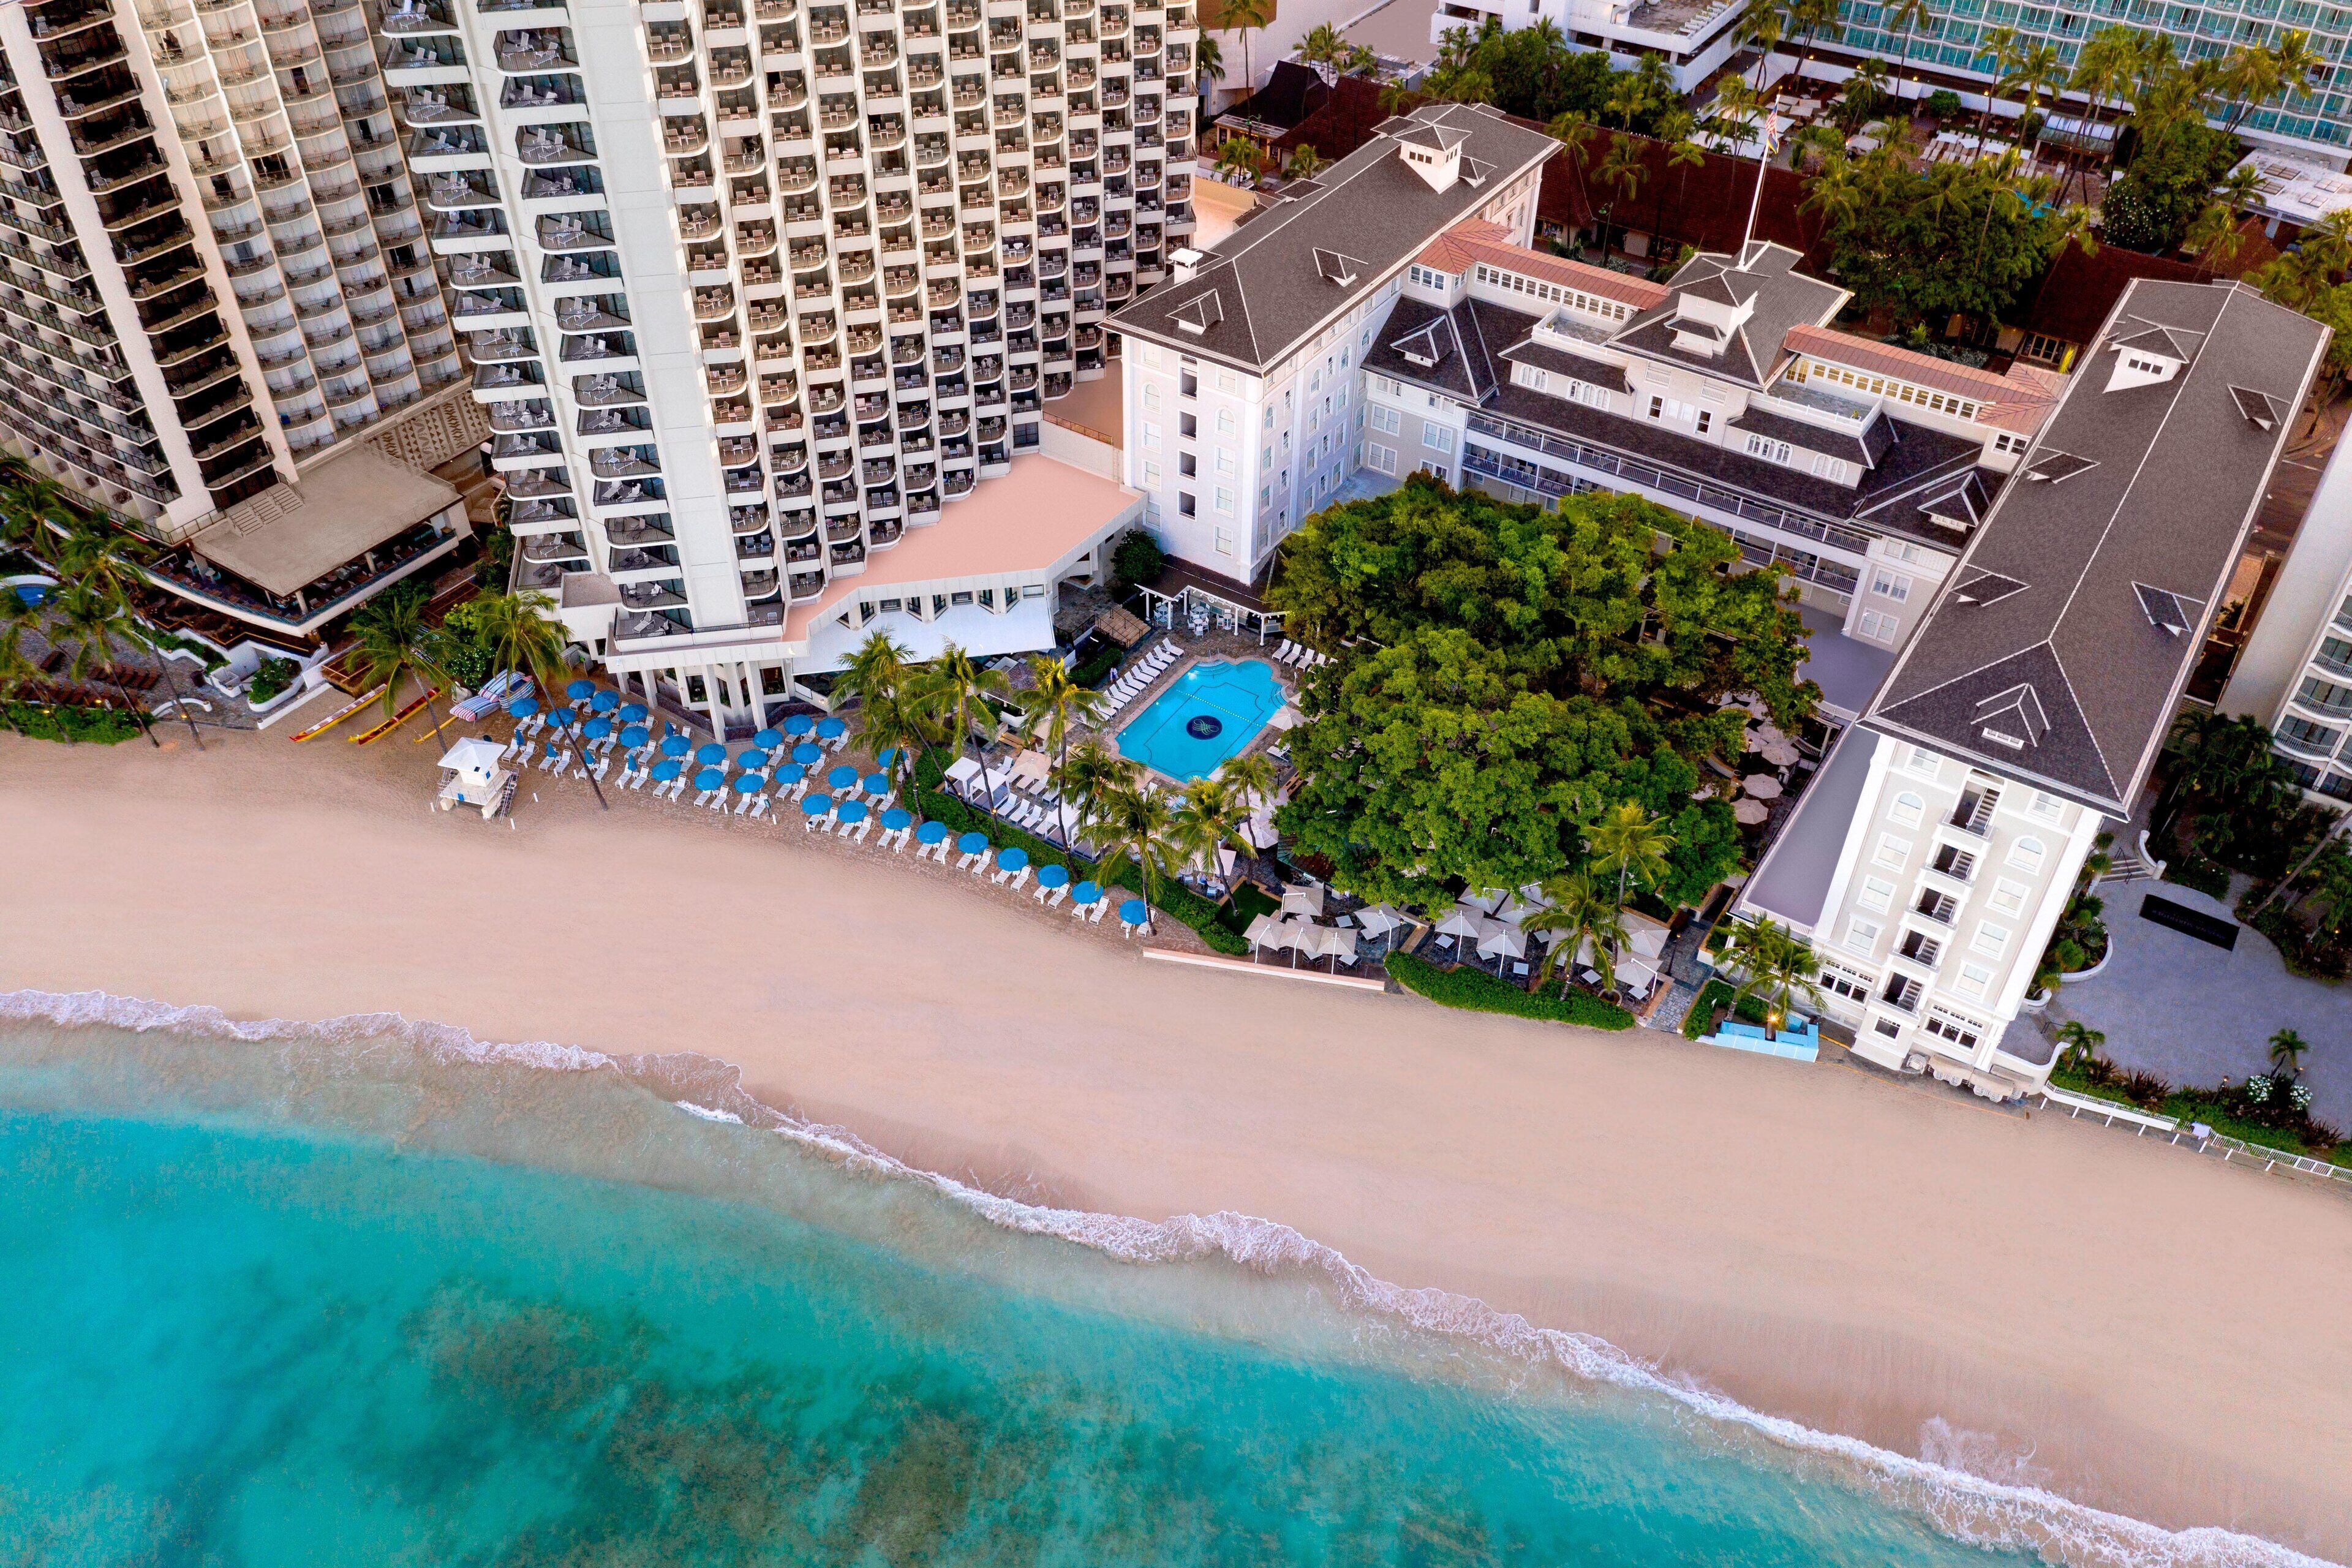 Moana Surfrider, a Westin Resort & Spa, Waikiki Beach